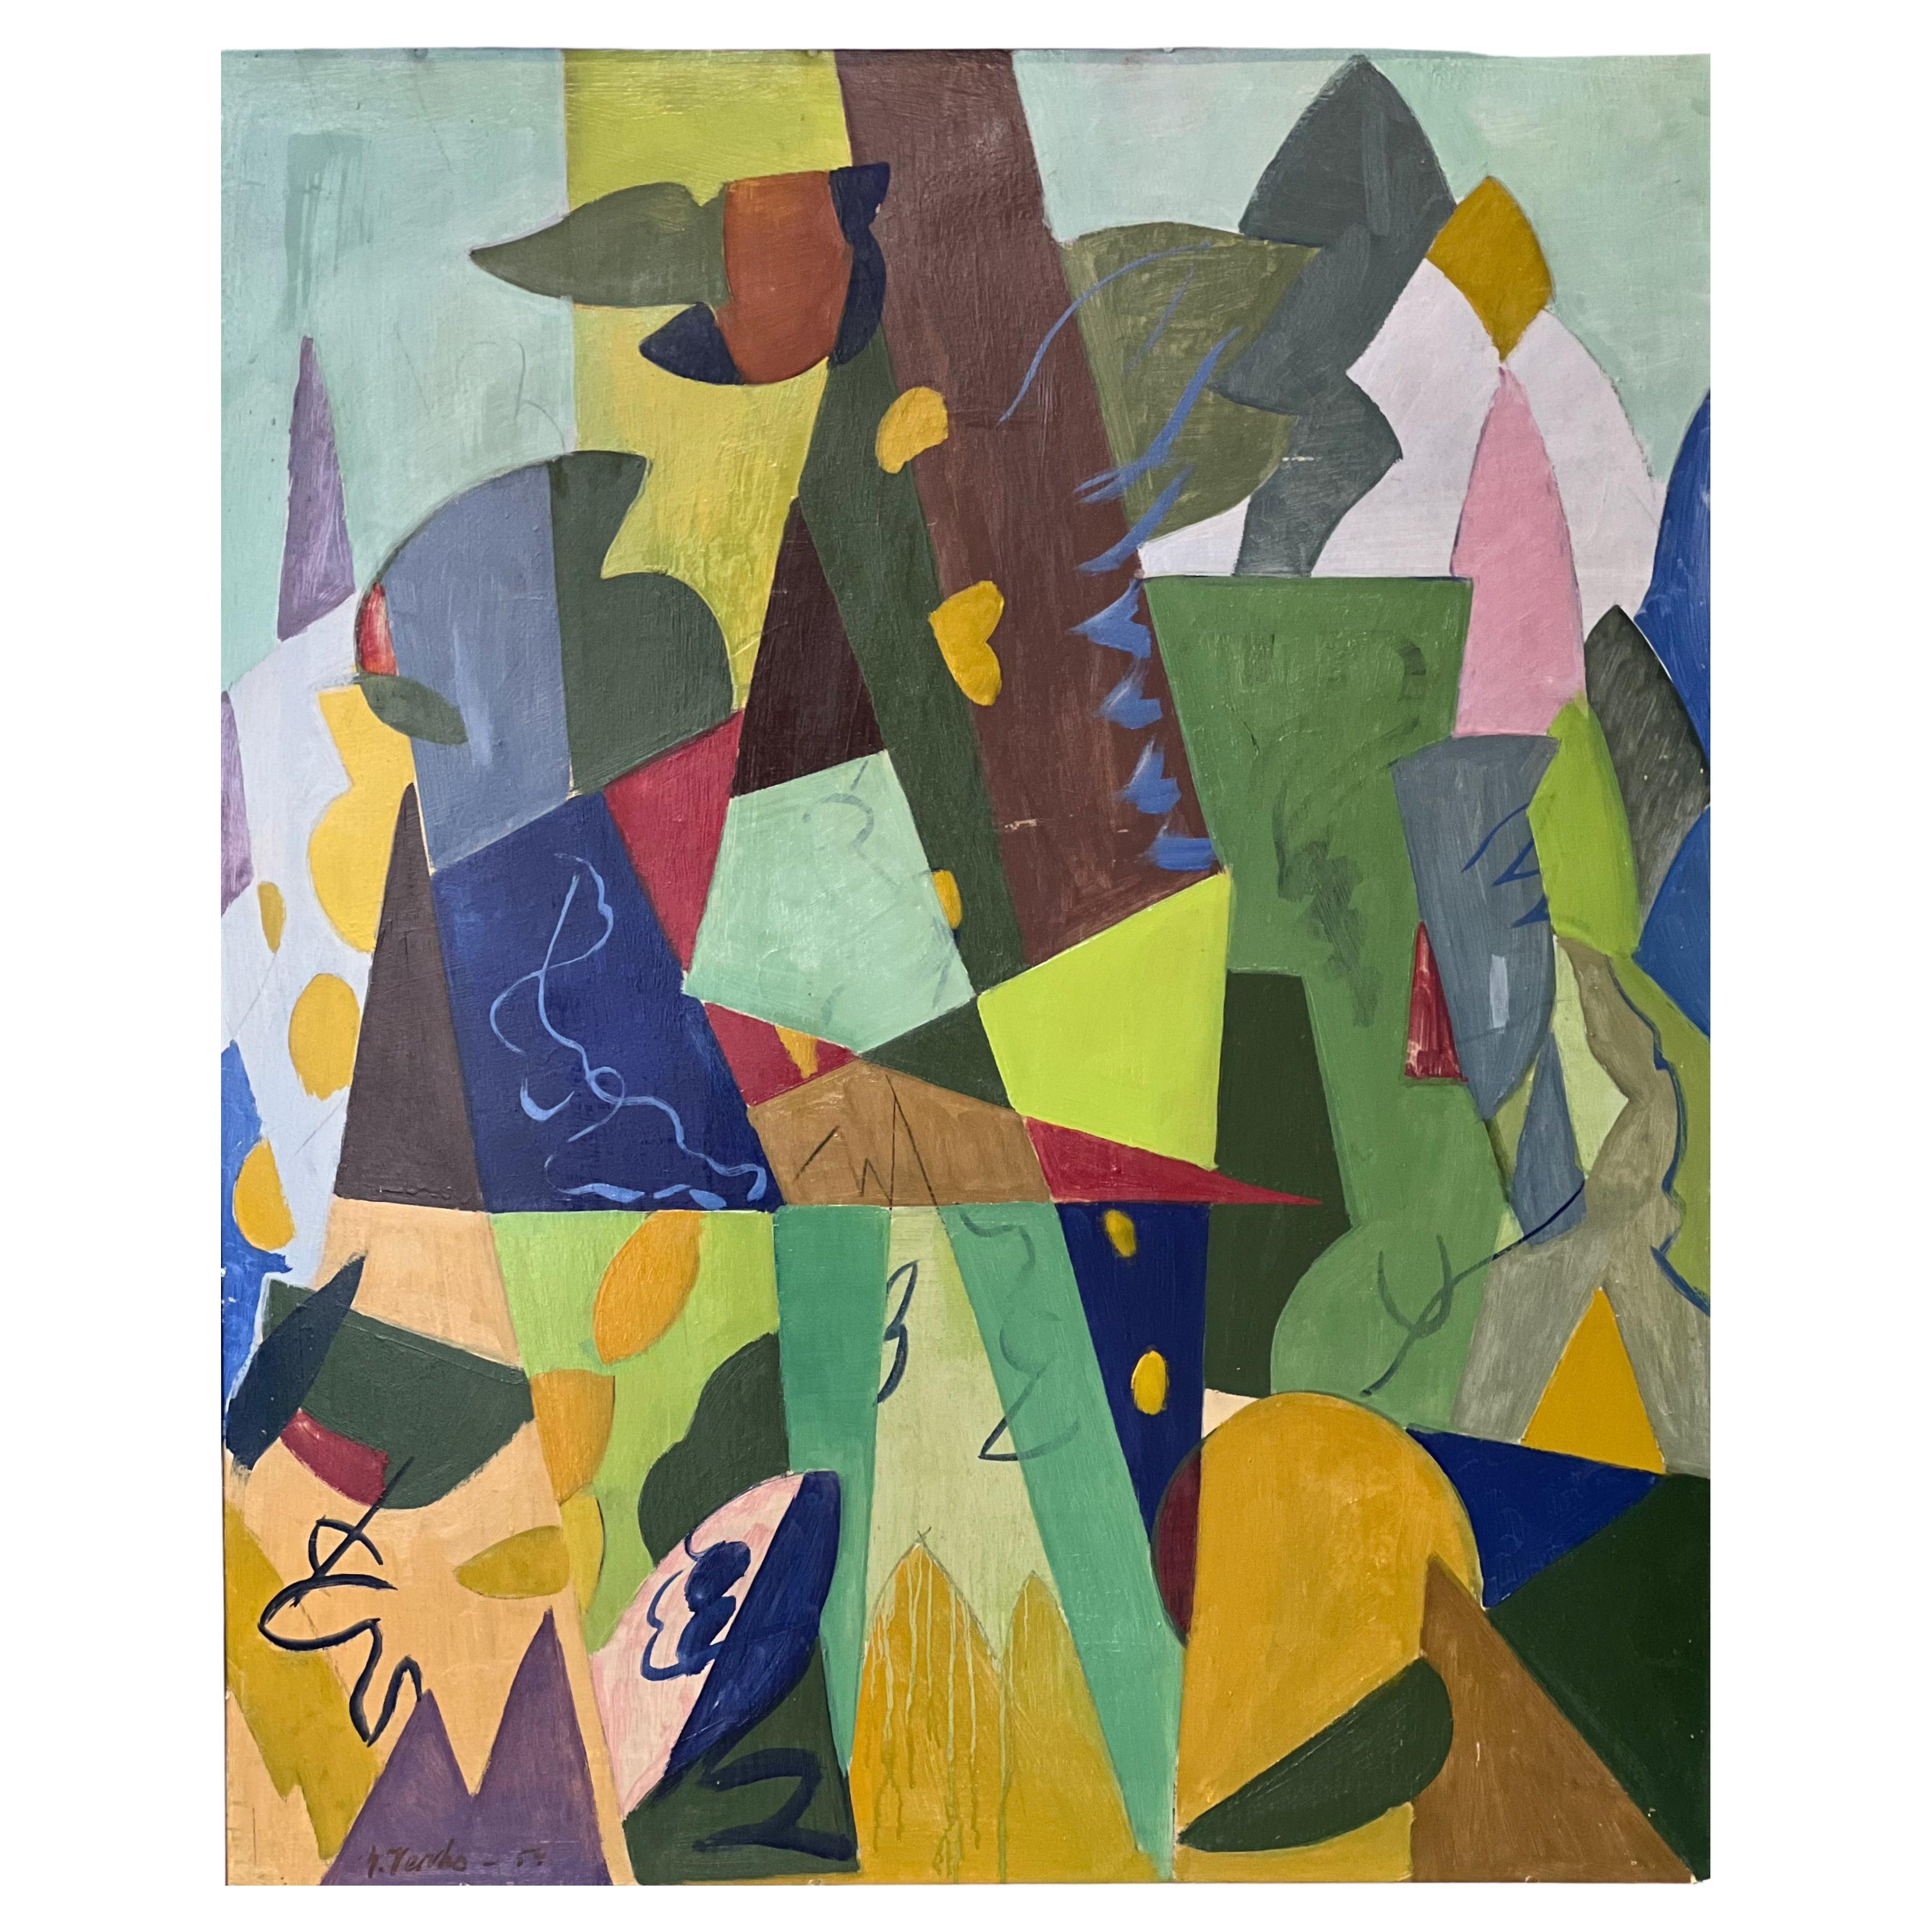 Yrjö Verho - Peinture abstraite - 1954